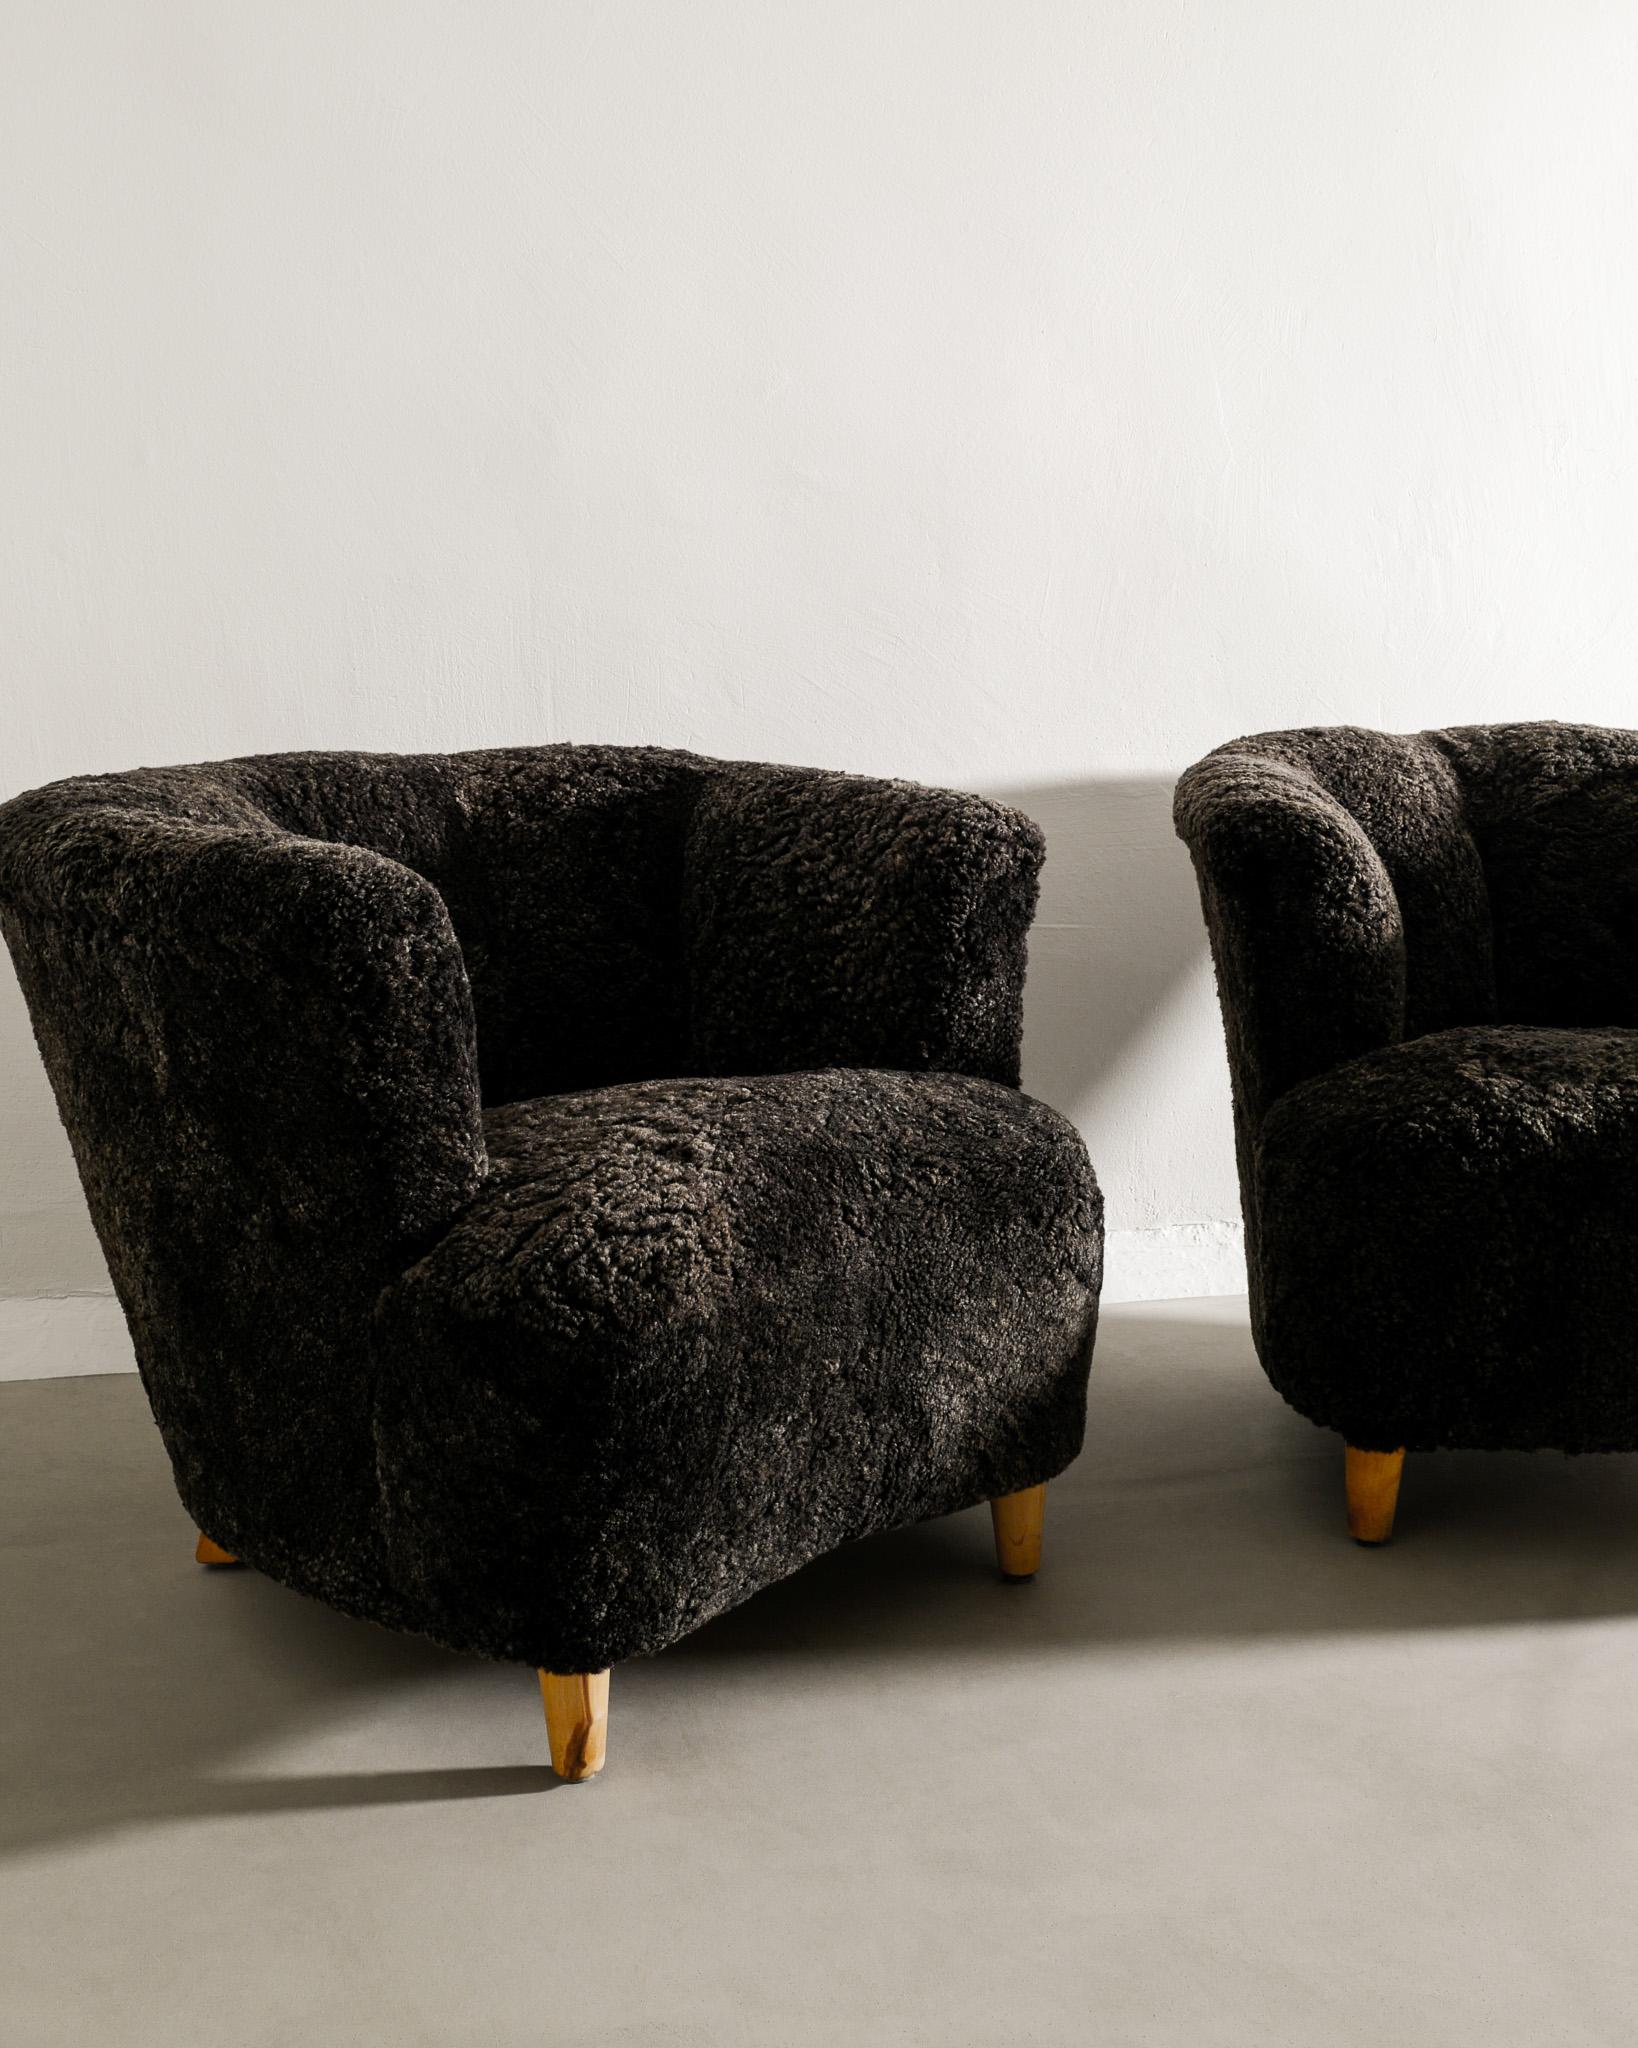 Paar geschwungene schwedische moderne Sessel mit Armlehne aus grauem Schafsleder, hergestellt 1940er Jahre (Schaffell und Schafleder)